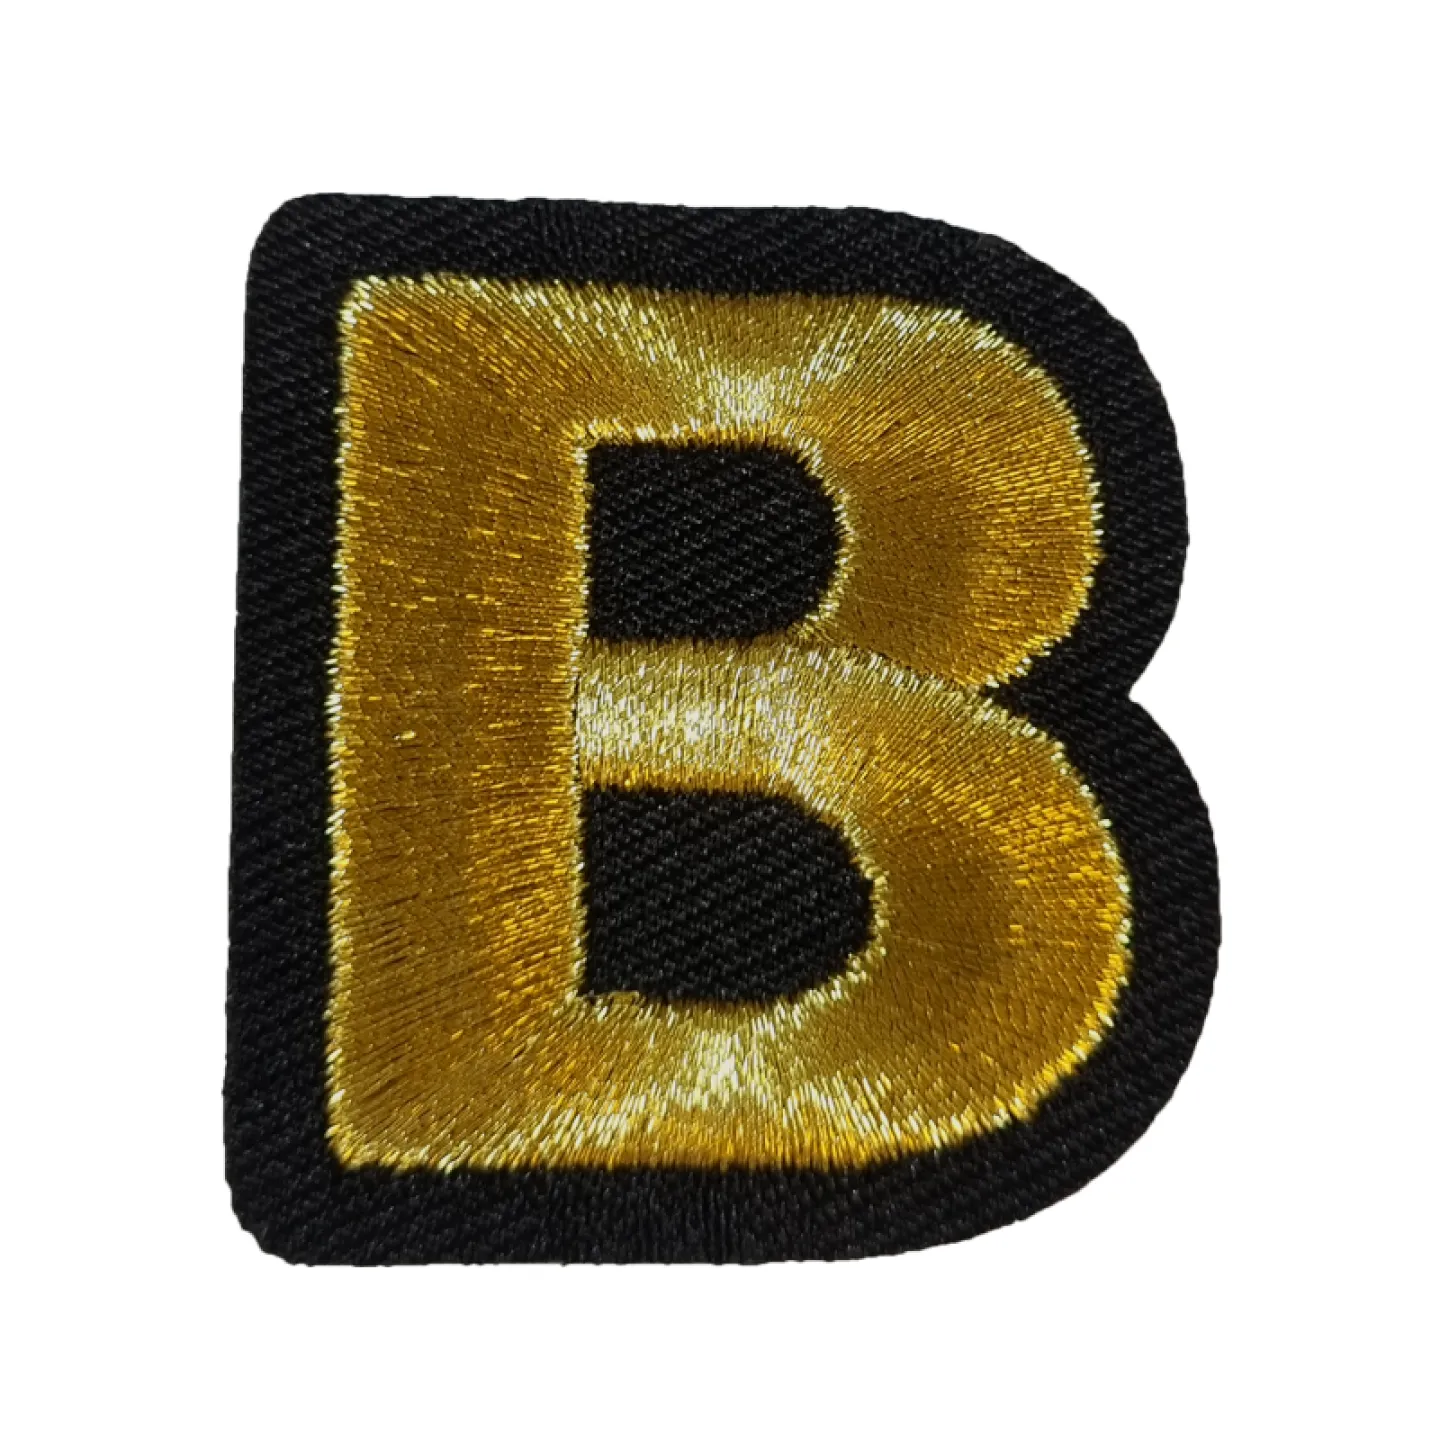 Kruikenstad embleem gouden letter B goedkoop.